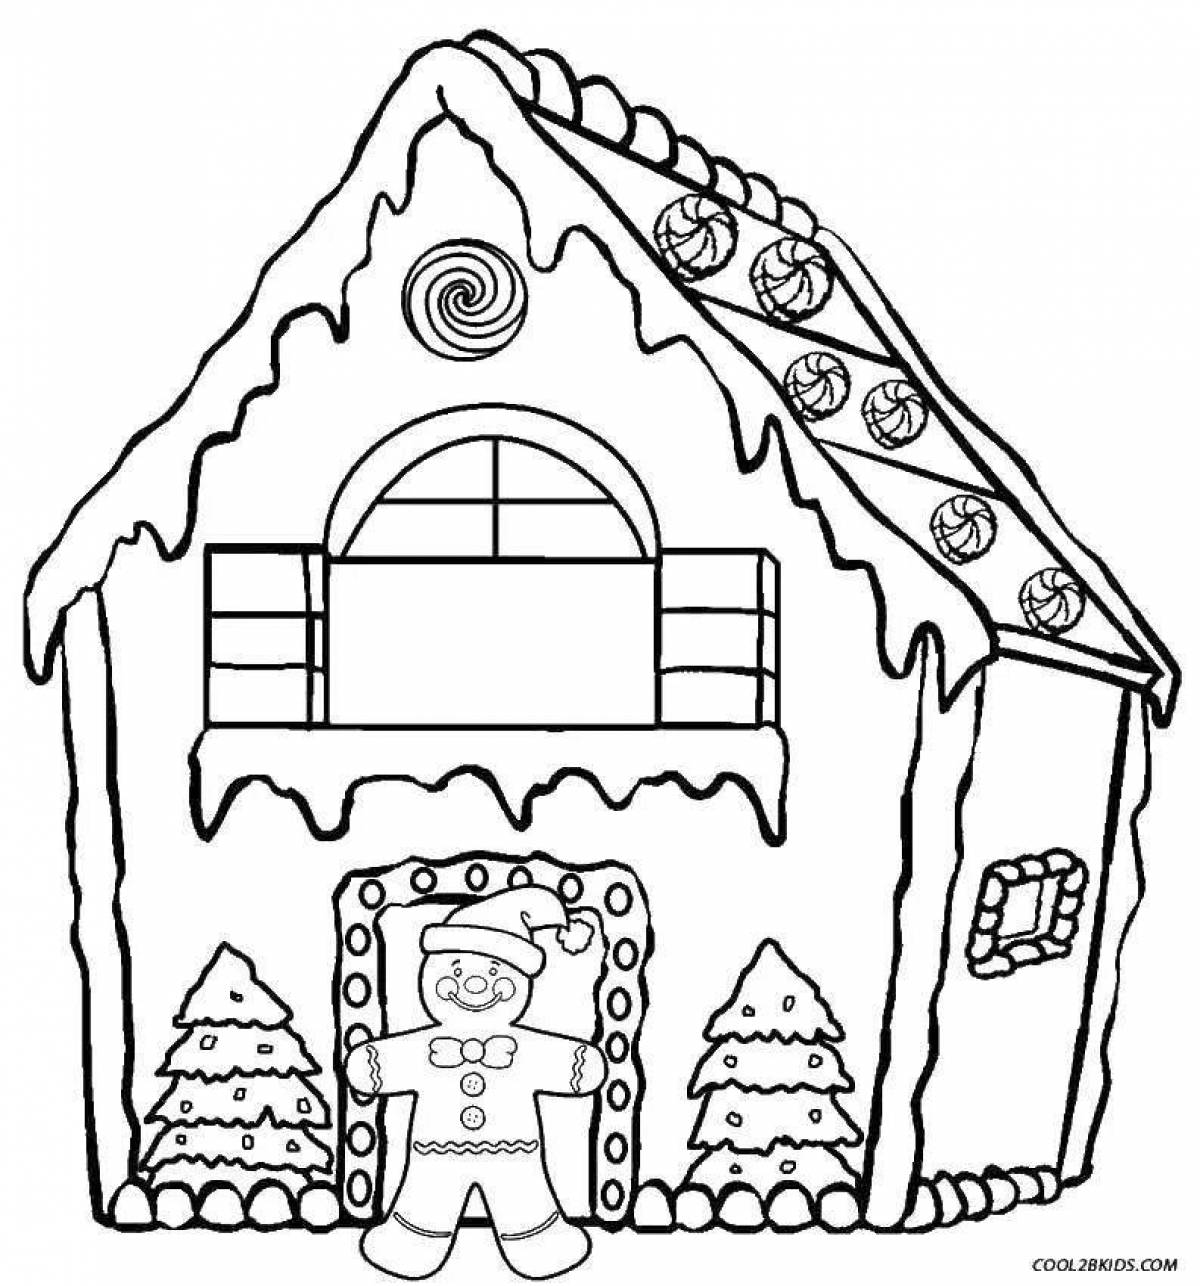 Раскраска яркий пряничный домик для детей